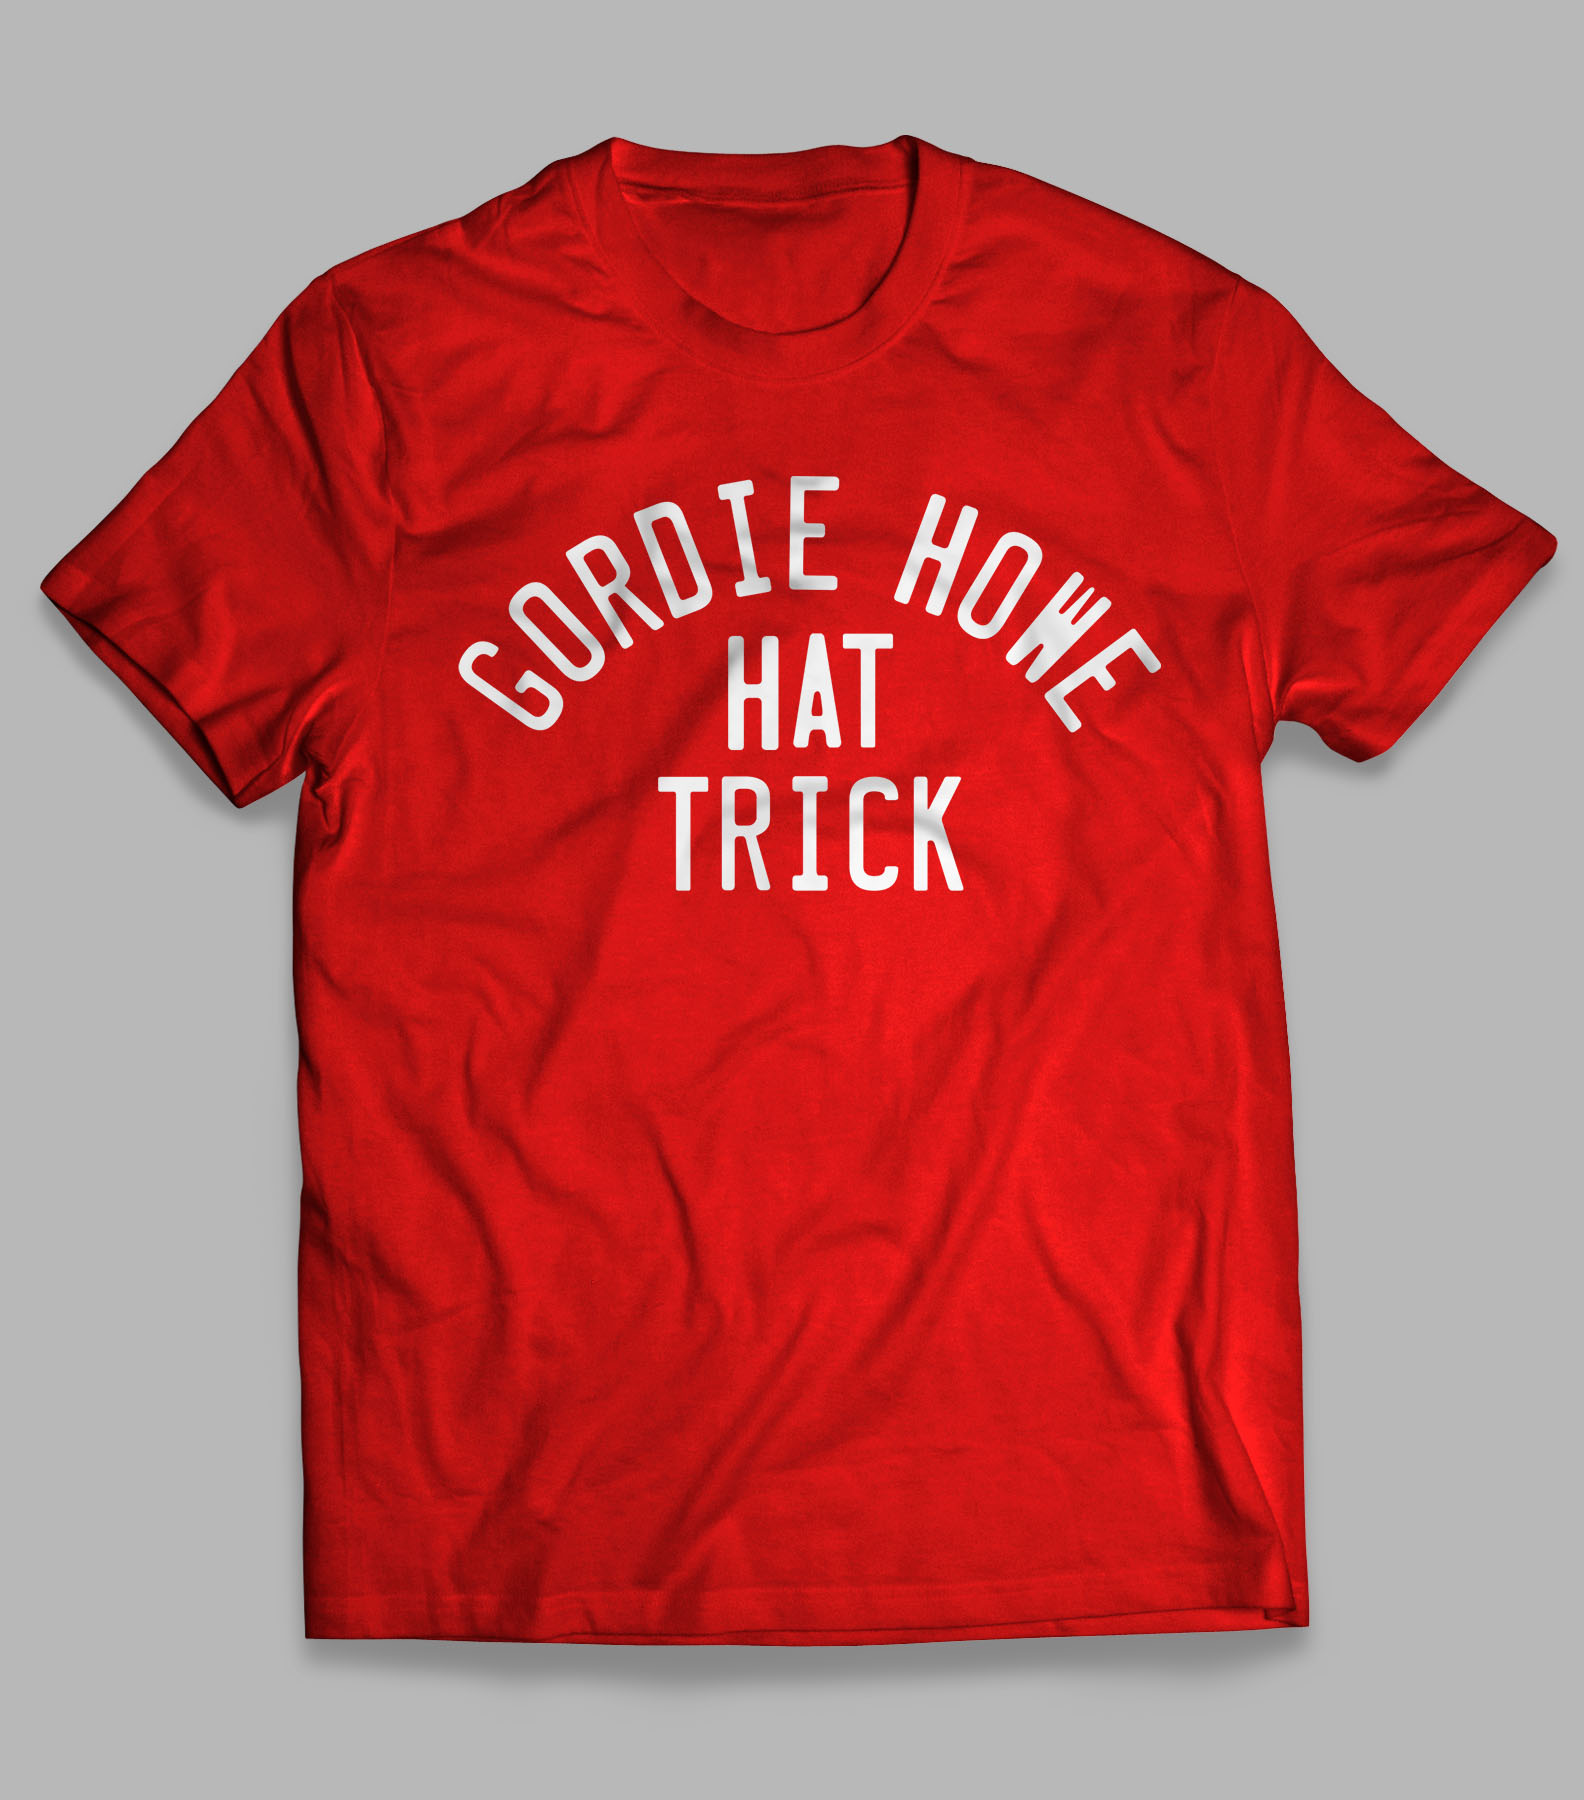 gordie howe shirt